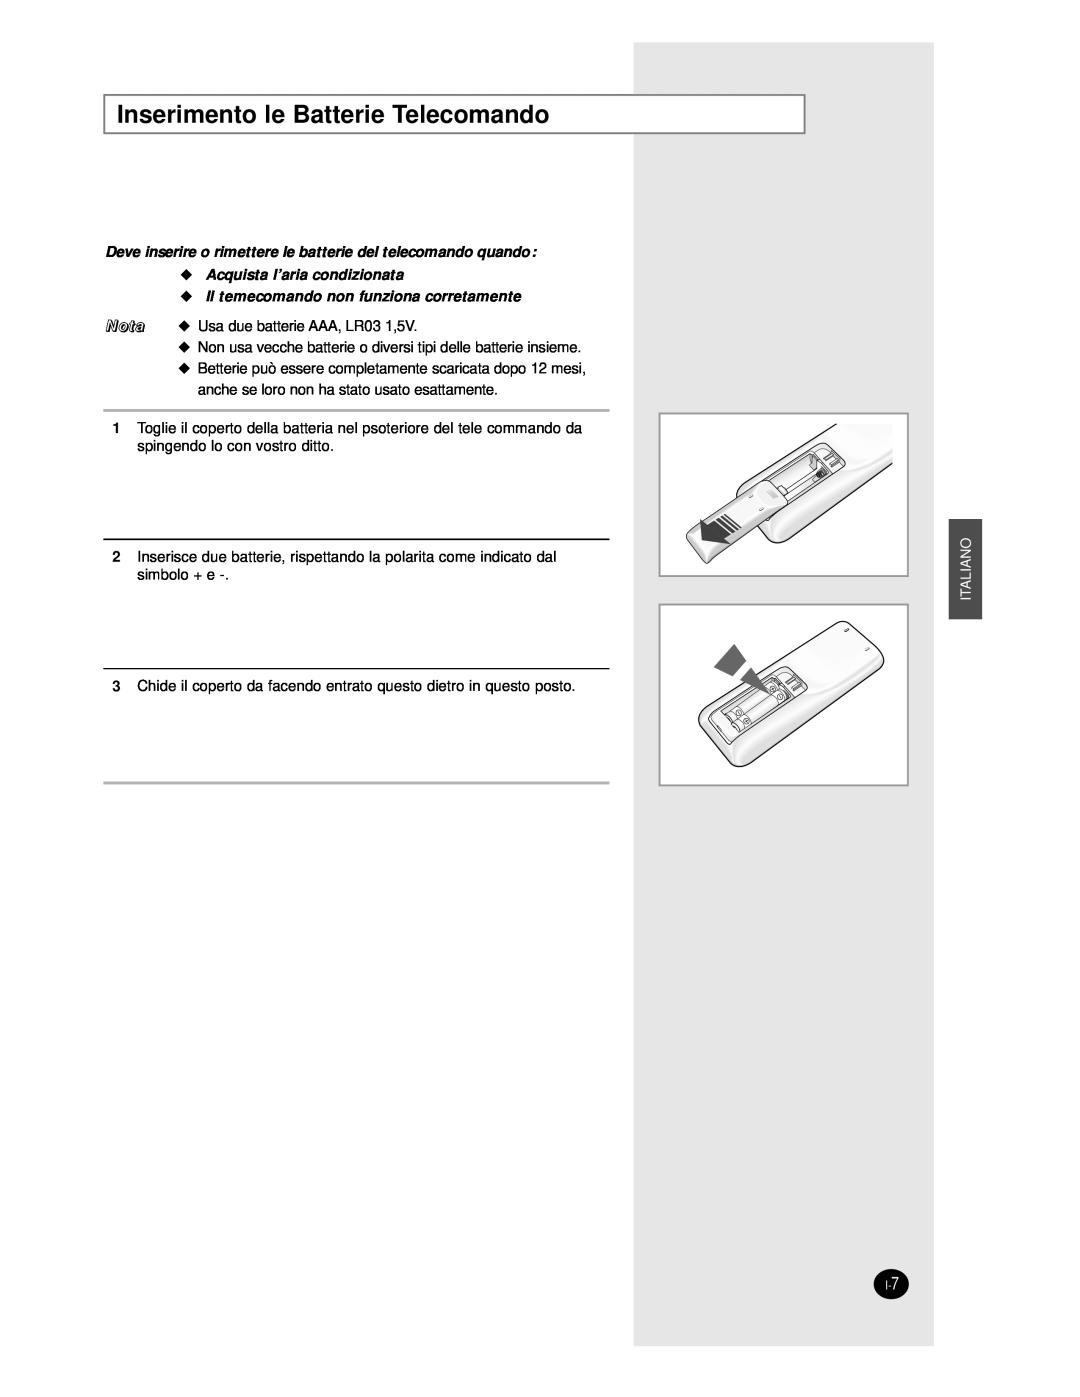 Samsung AS24BPAX manual Inserimento le Batterie Telecomando, Deve inserire o rimettere le batterie del telecomando quando 